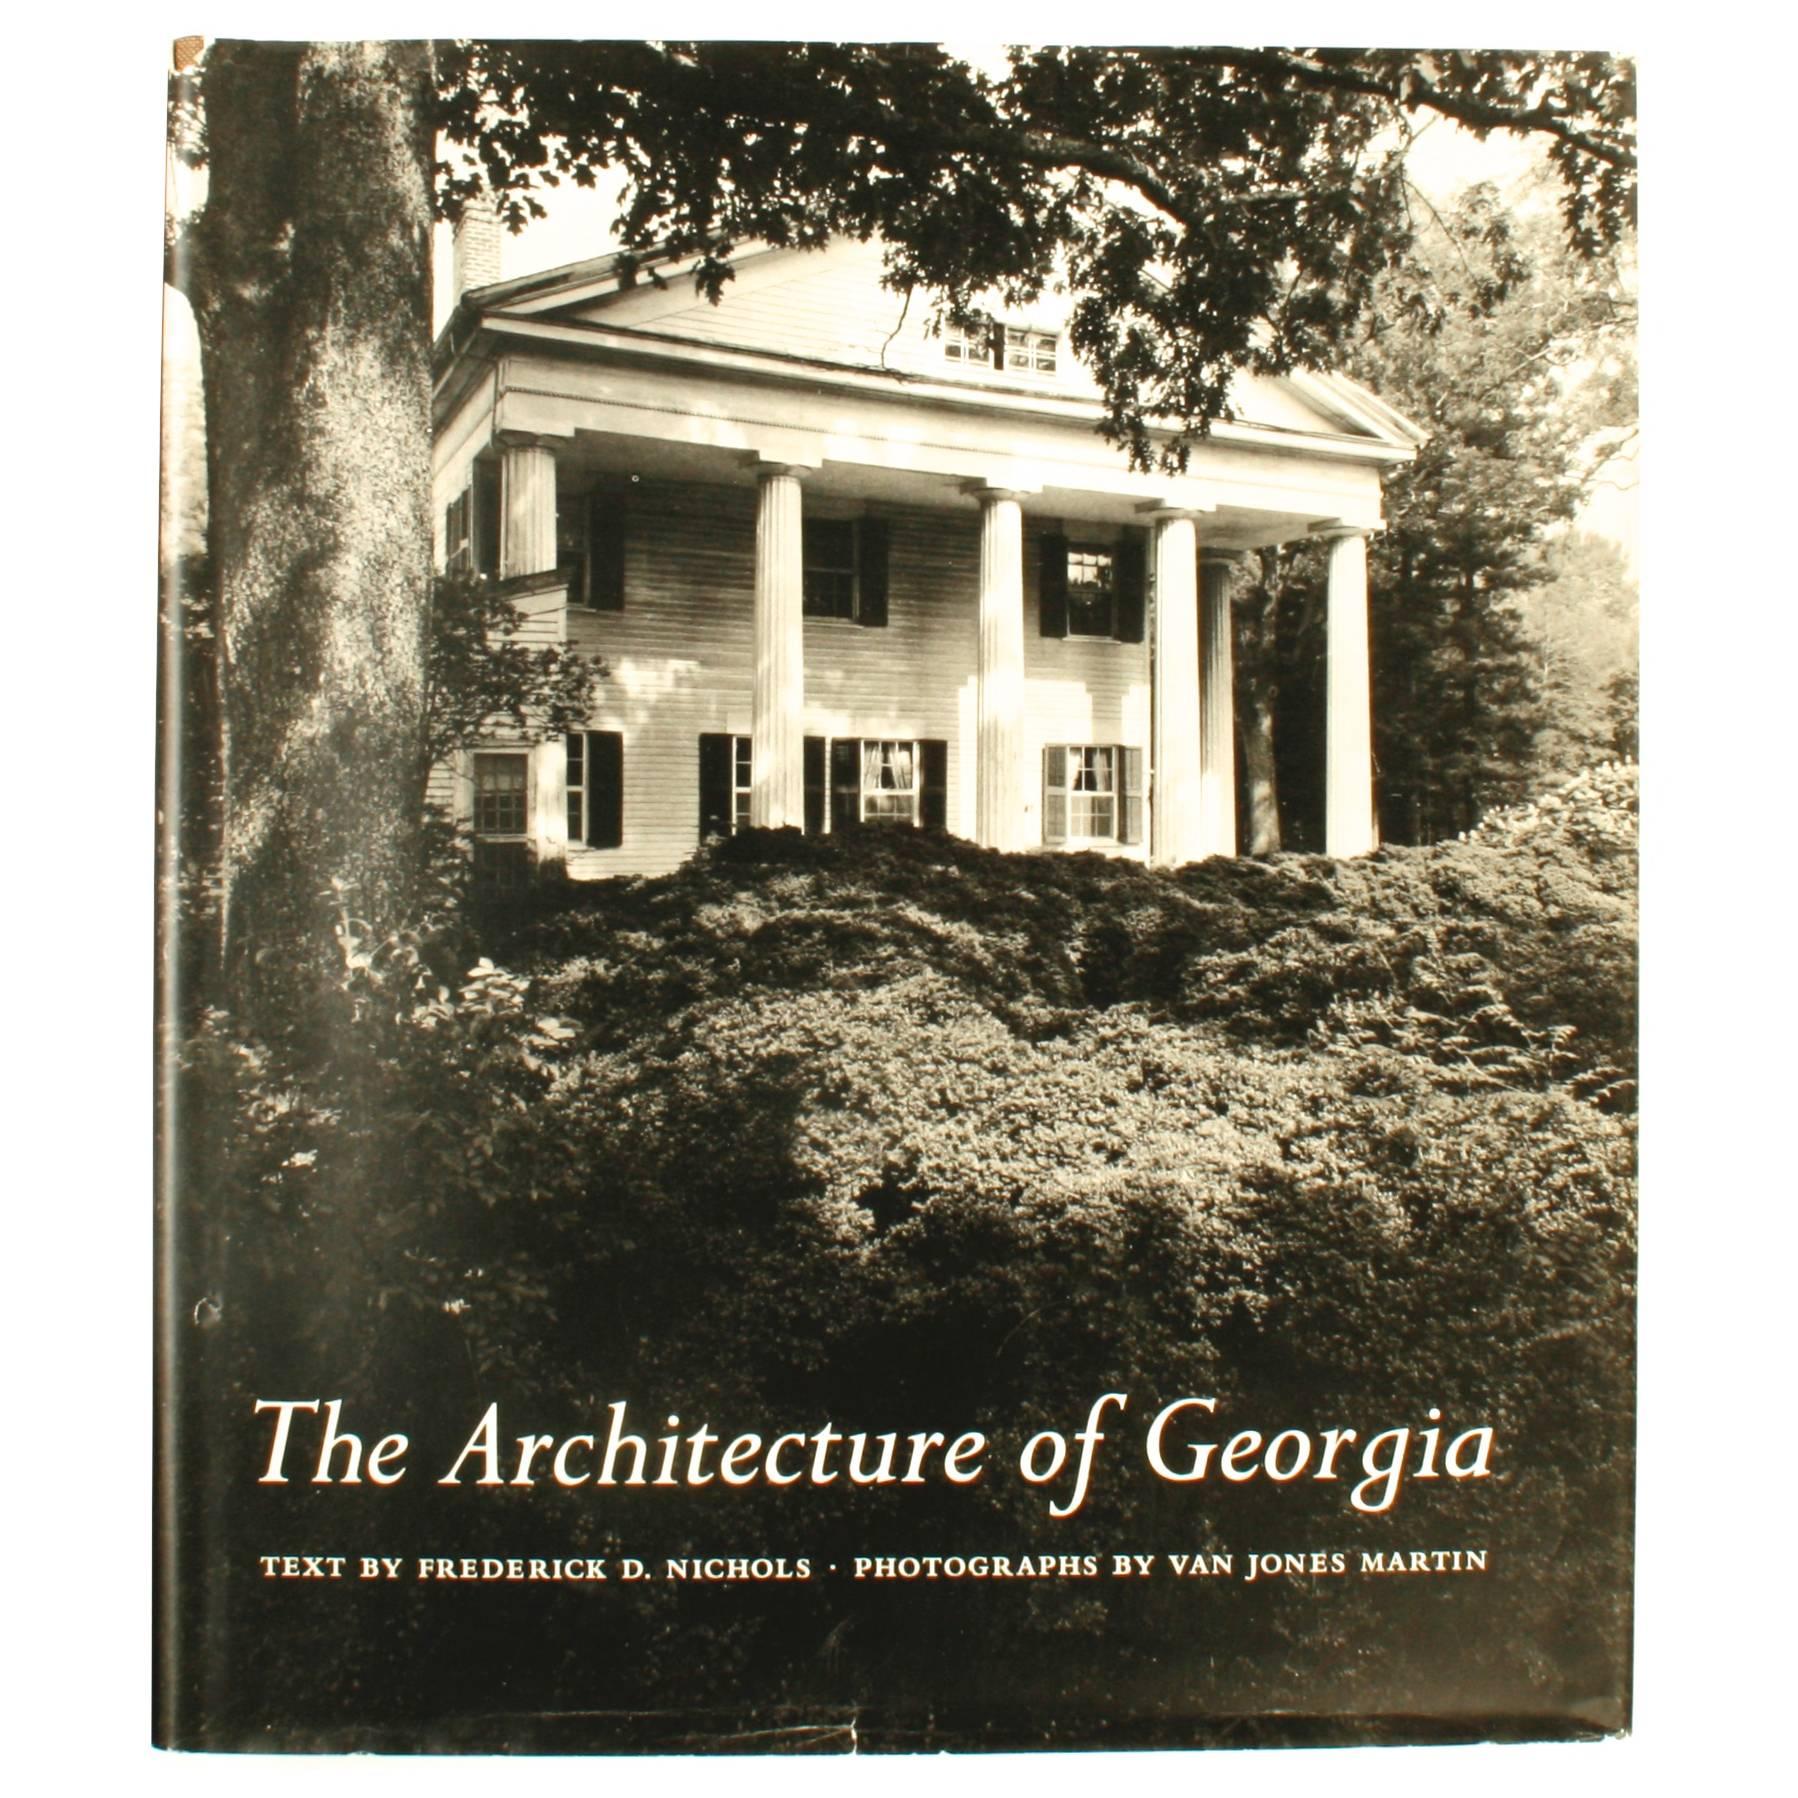 Architektonische Architektur von Georgia von Frederick Nichols, Erstausgabe